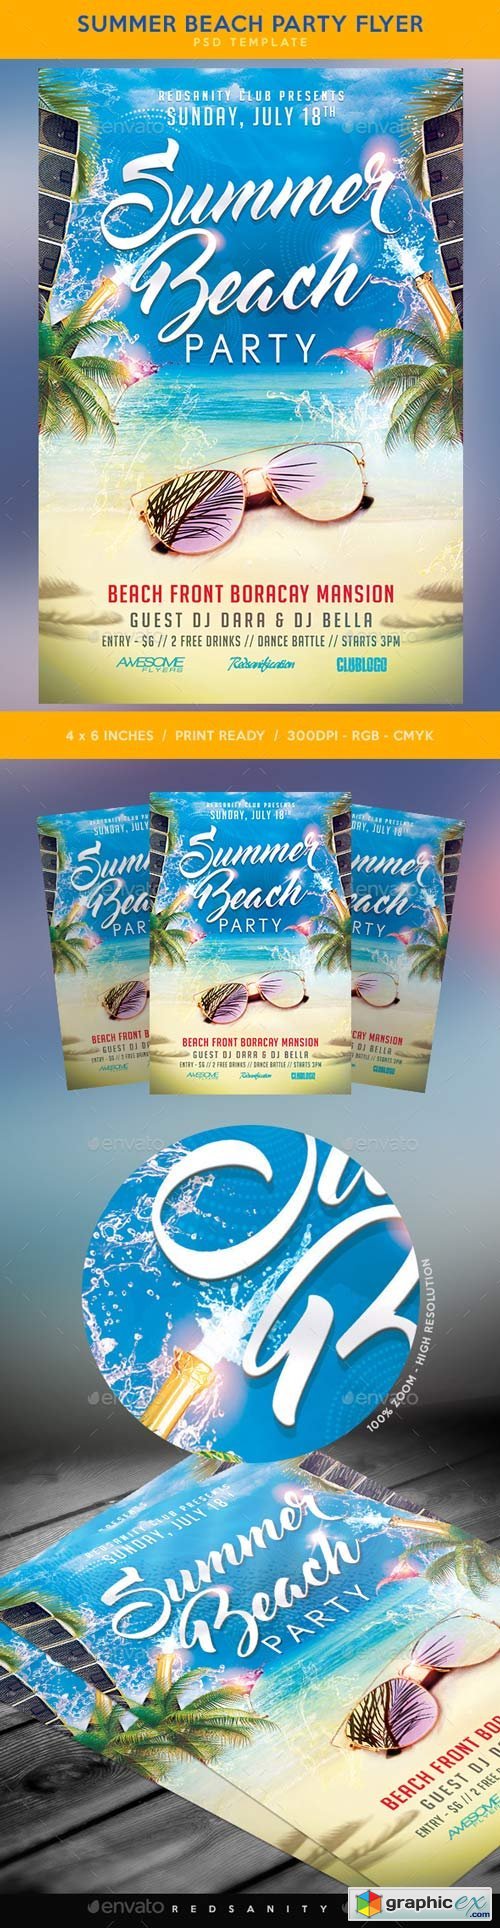 Summer Beach Party Flyer 19922739